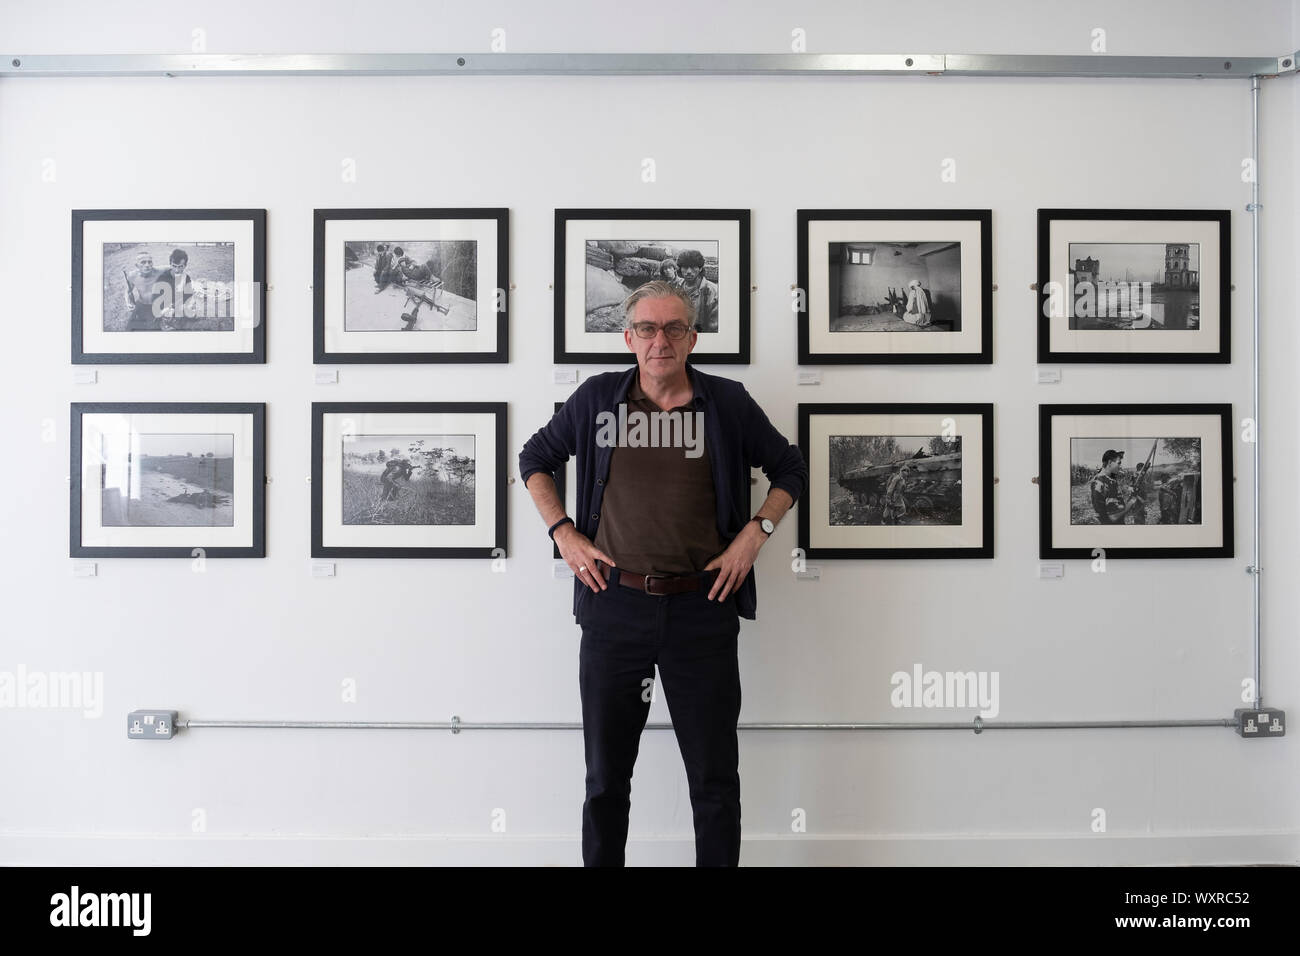 Craig Wallace rédacteur de Sogo Arts magazine dans la galerie Arts Sogo sur Saltmarket à Glasgow, Écosse, Royaume-Uni. Exposition de photographies de guerre par David Pratt exposition en cours. Banque D'Images